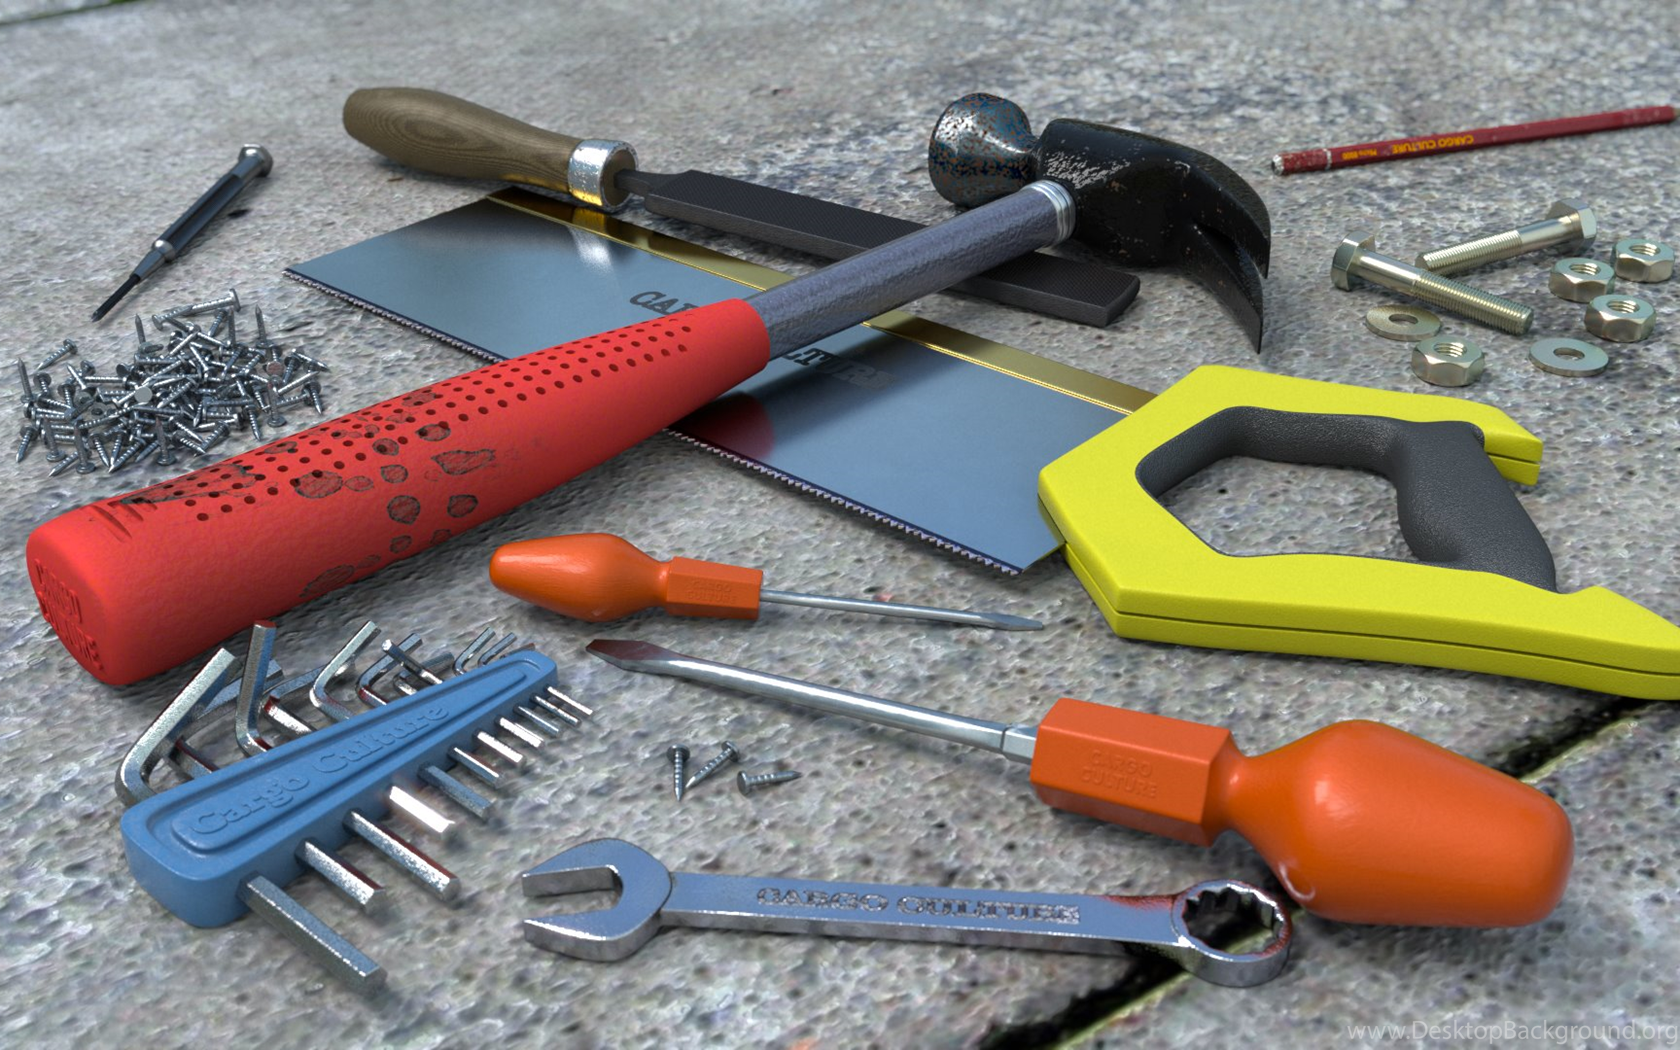 Сайт про инструменты. Инструменты для ремонта. Рабочие инструменты. Ручной строительный инструмент. Инструменты слесаря.